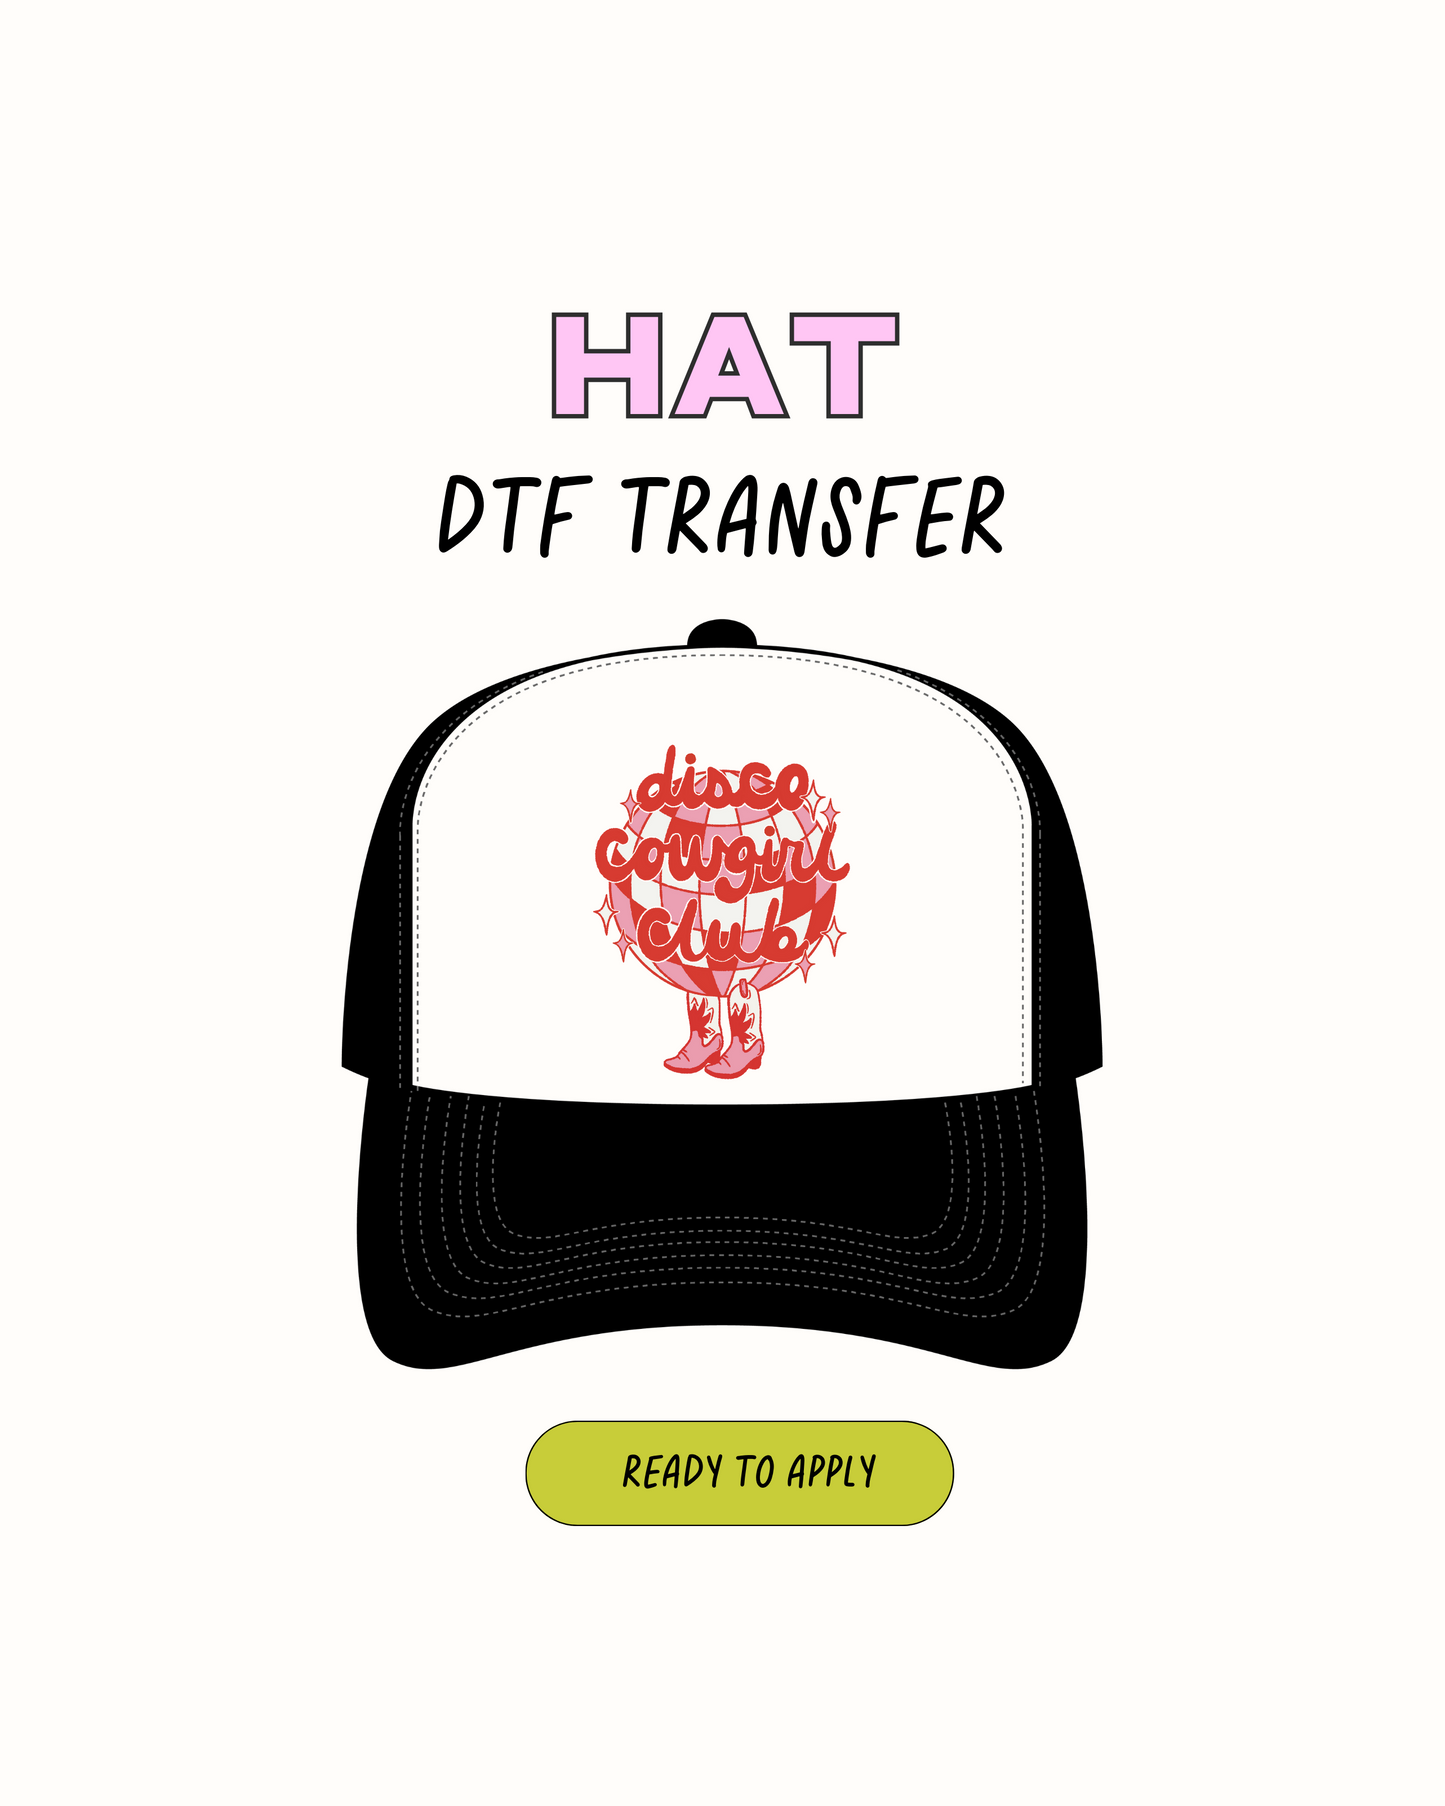 Disco Cowgirl Club - Transferencias de sombreros DTF 